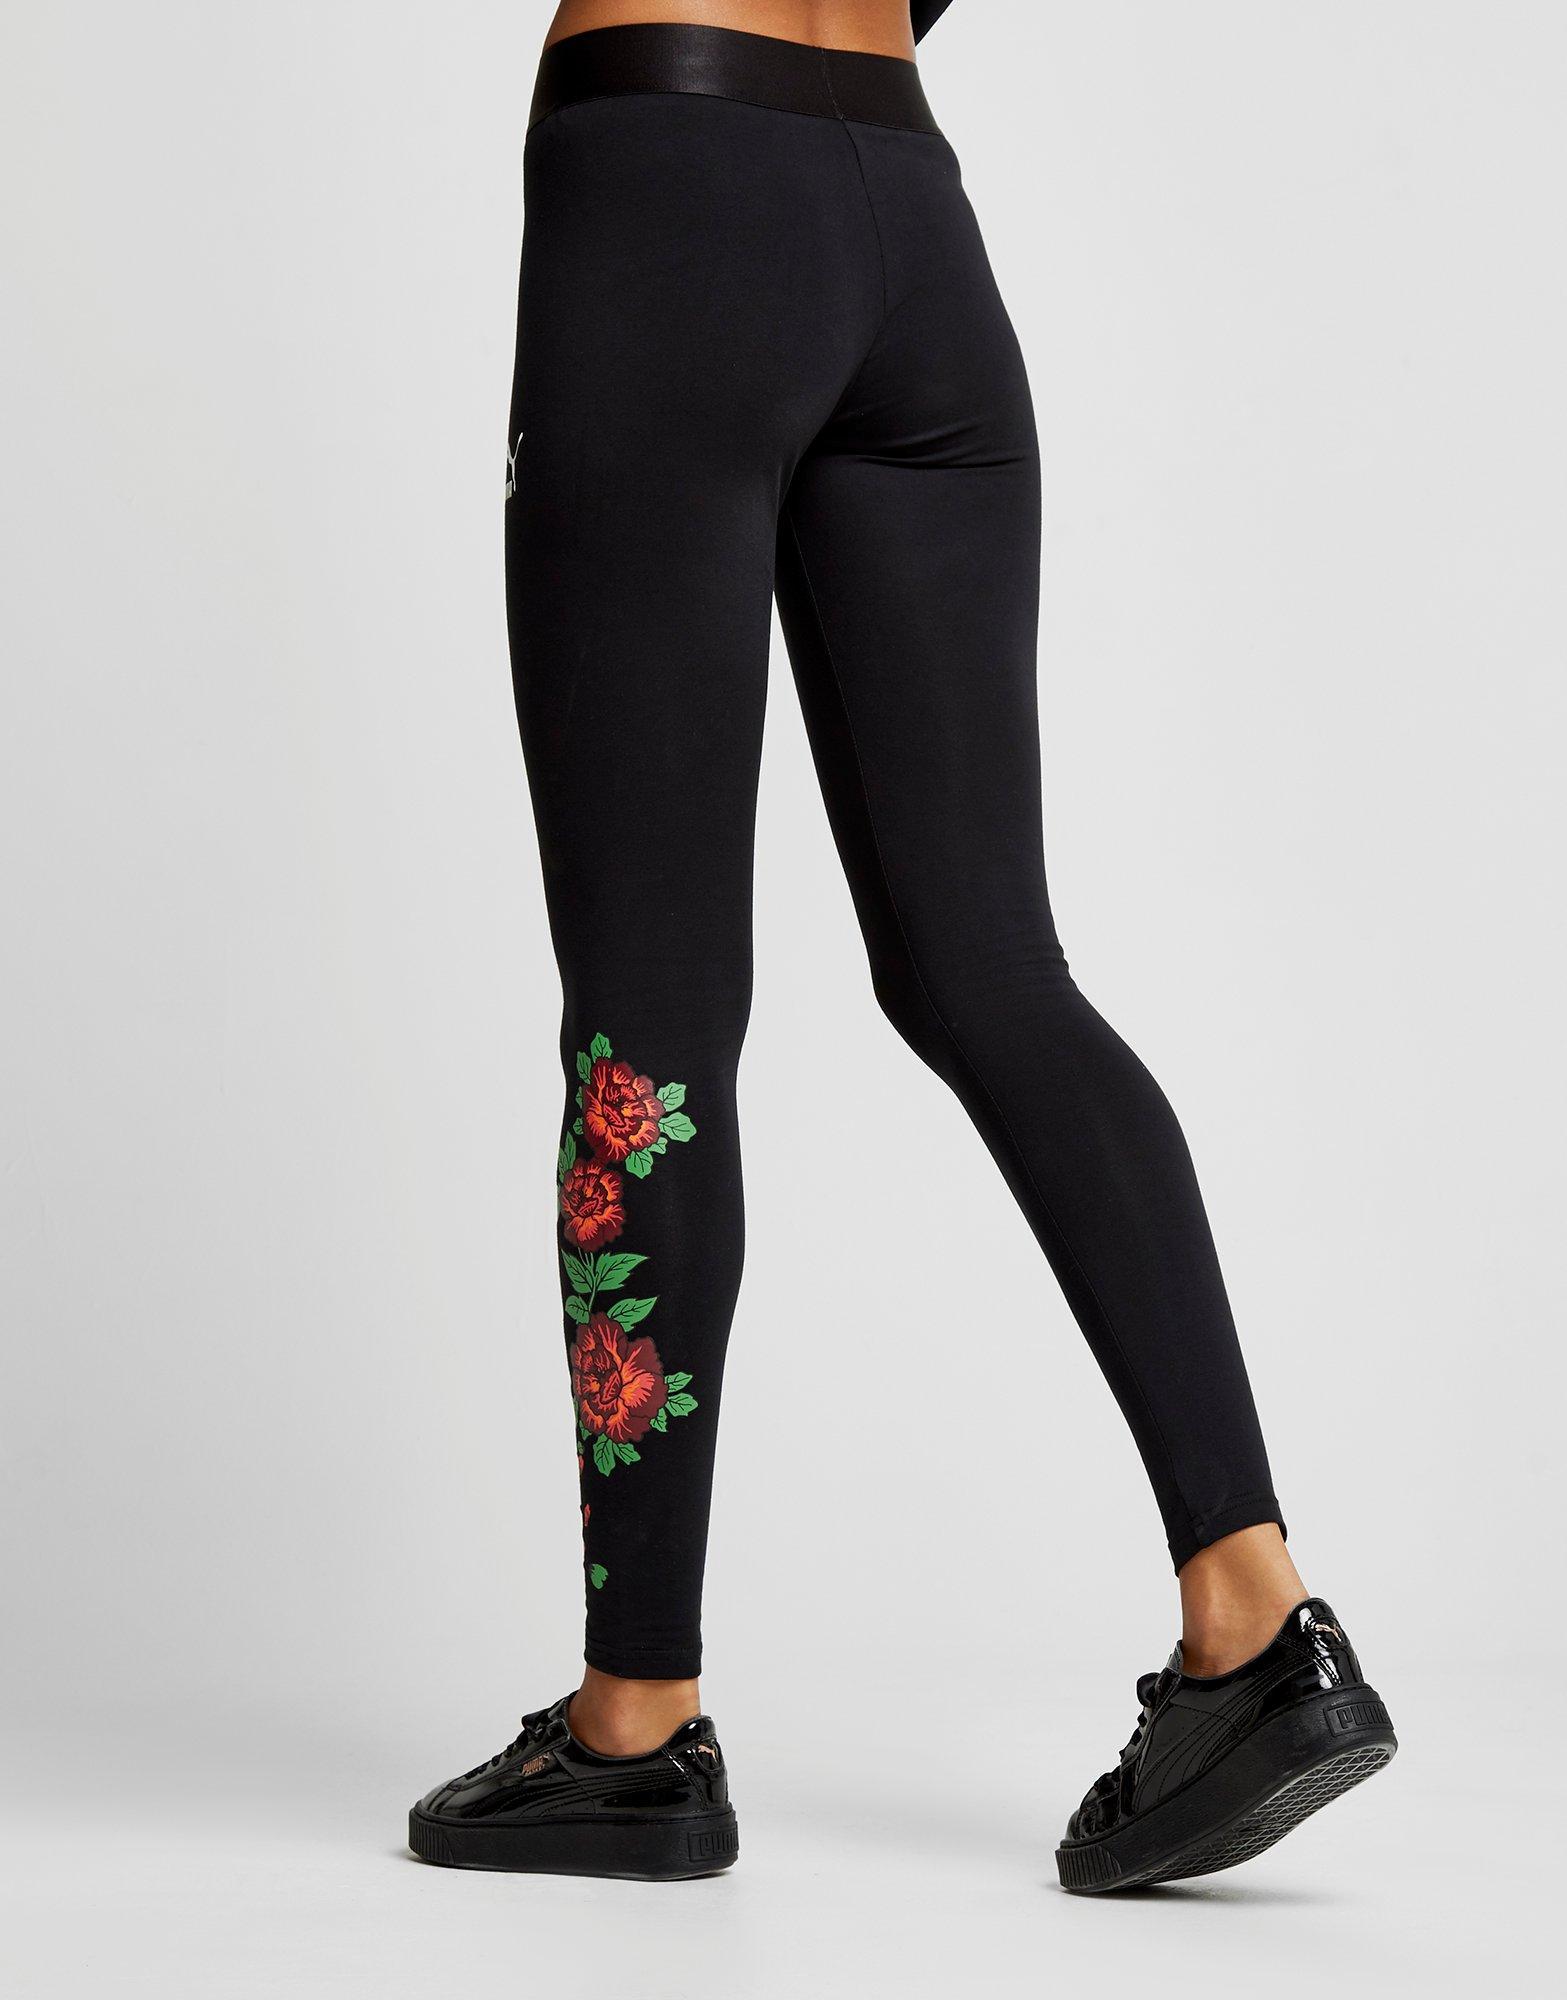 puma floral leggings